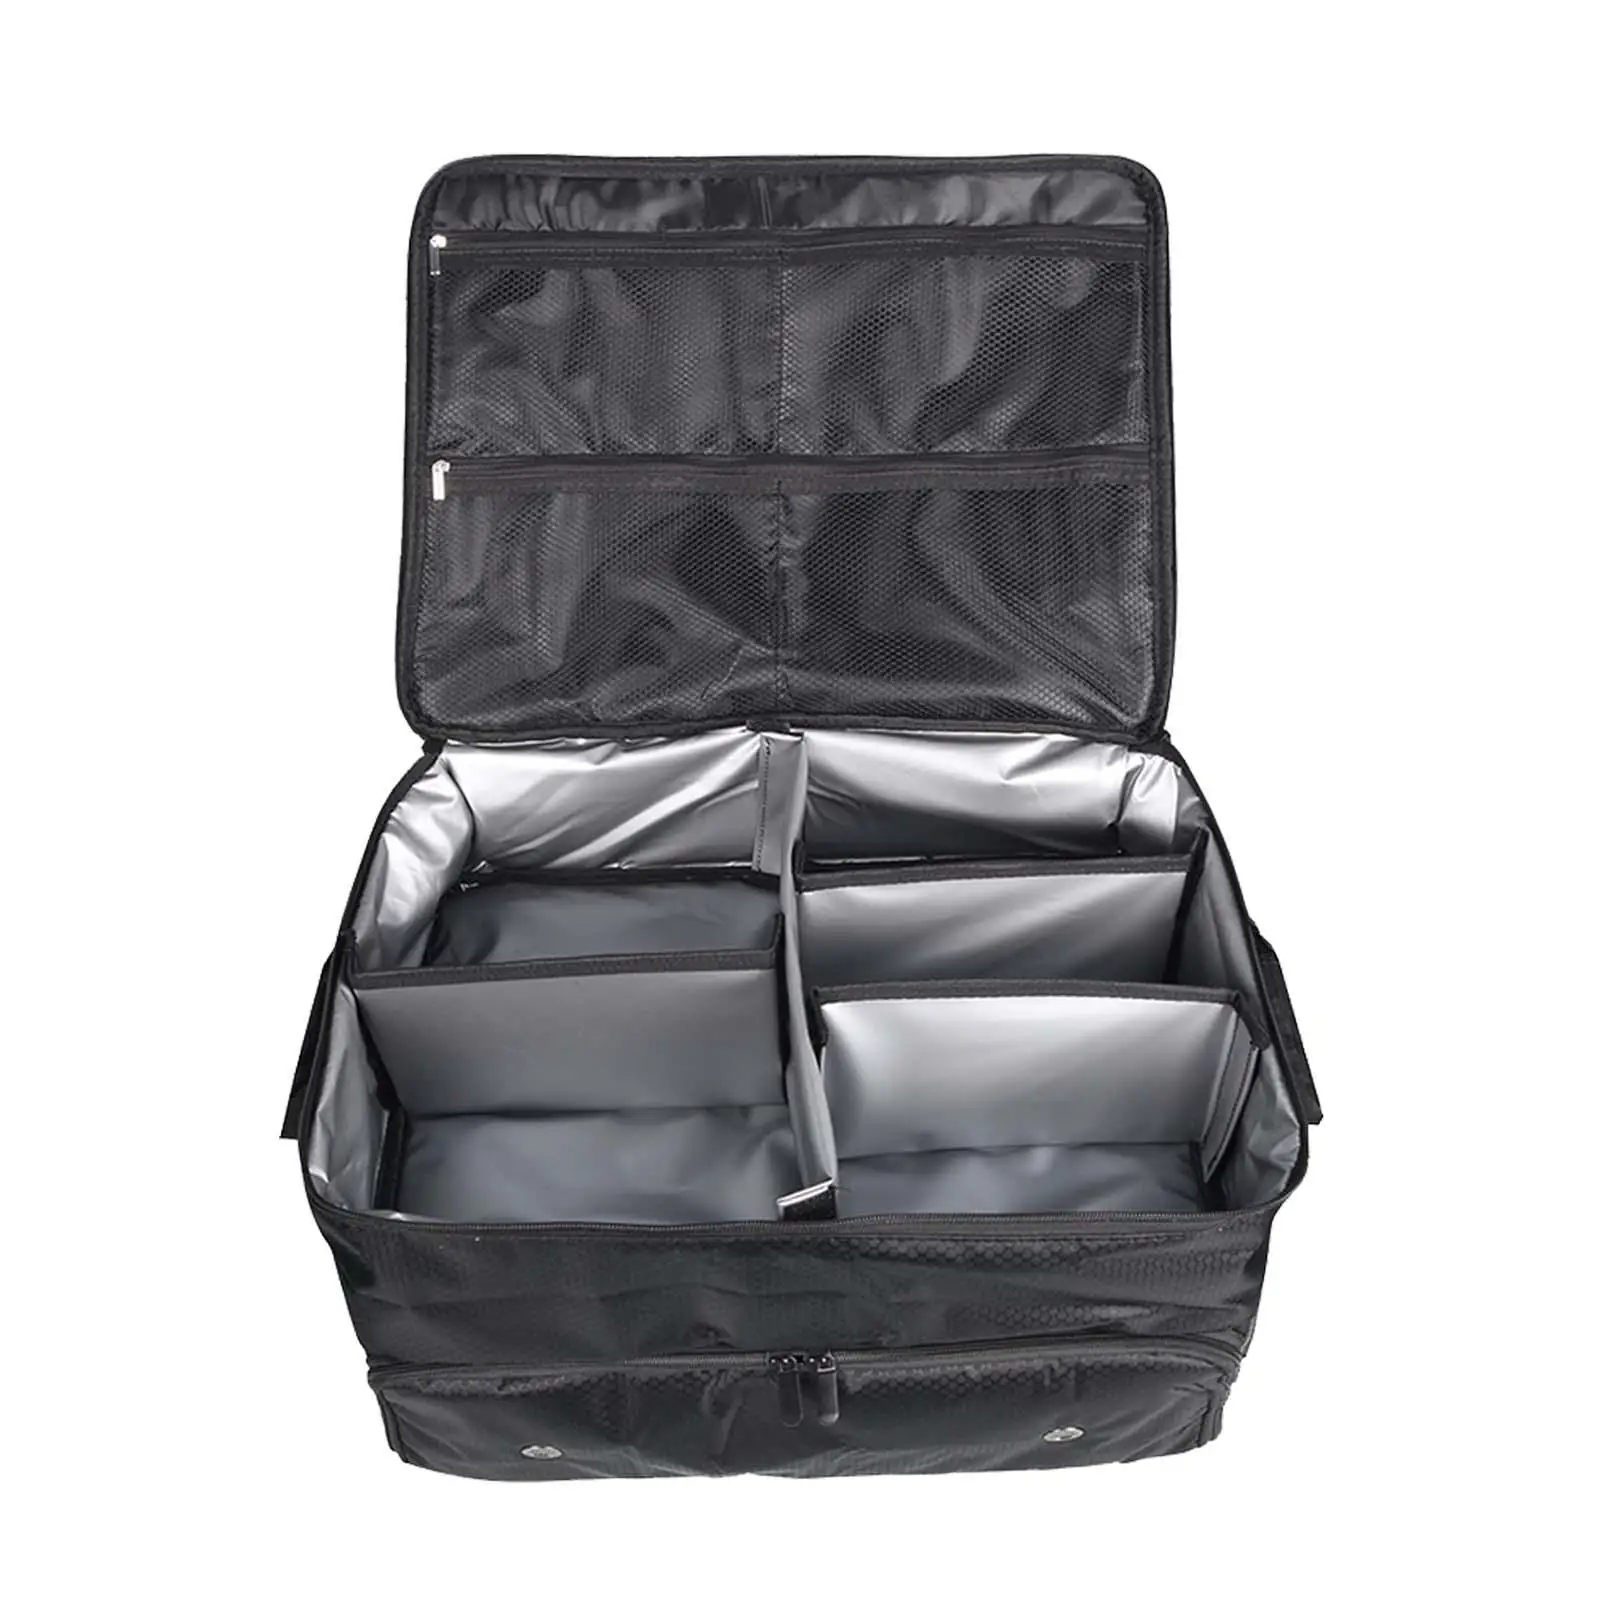 Органайзер для багажника для гольфа, складной багажник для хранения предметов первой необходимости, дорожная сумка, шкафчик для одежды, отличная идея подарка для игроков в гольф - 4